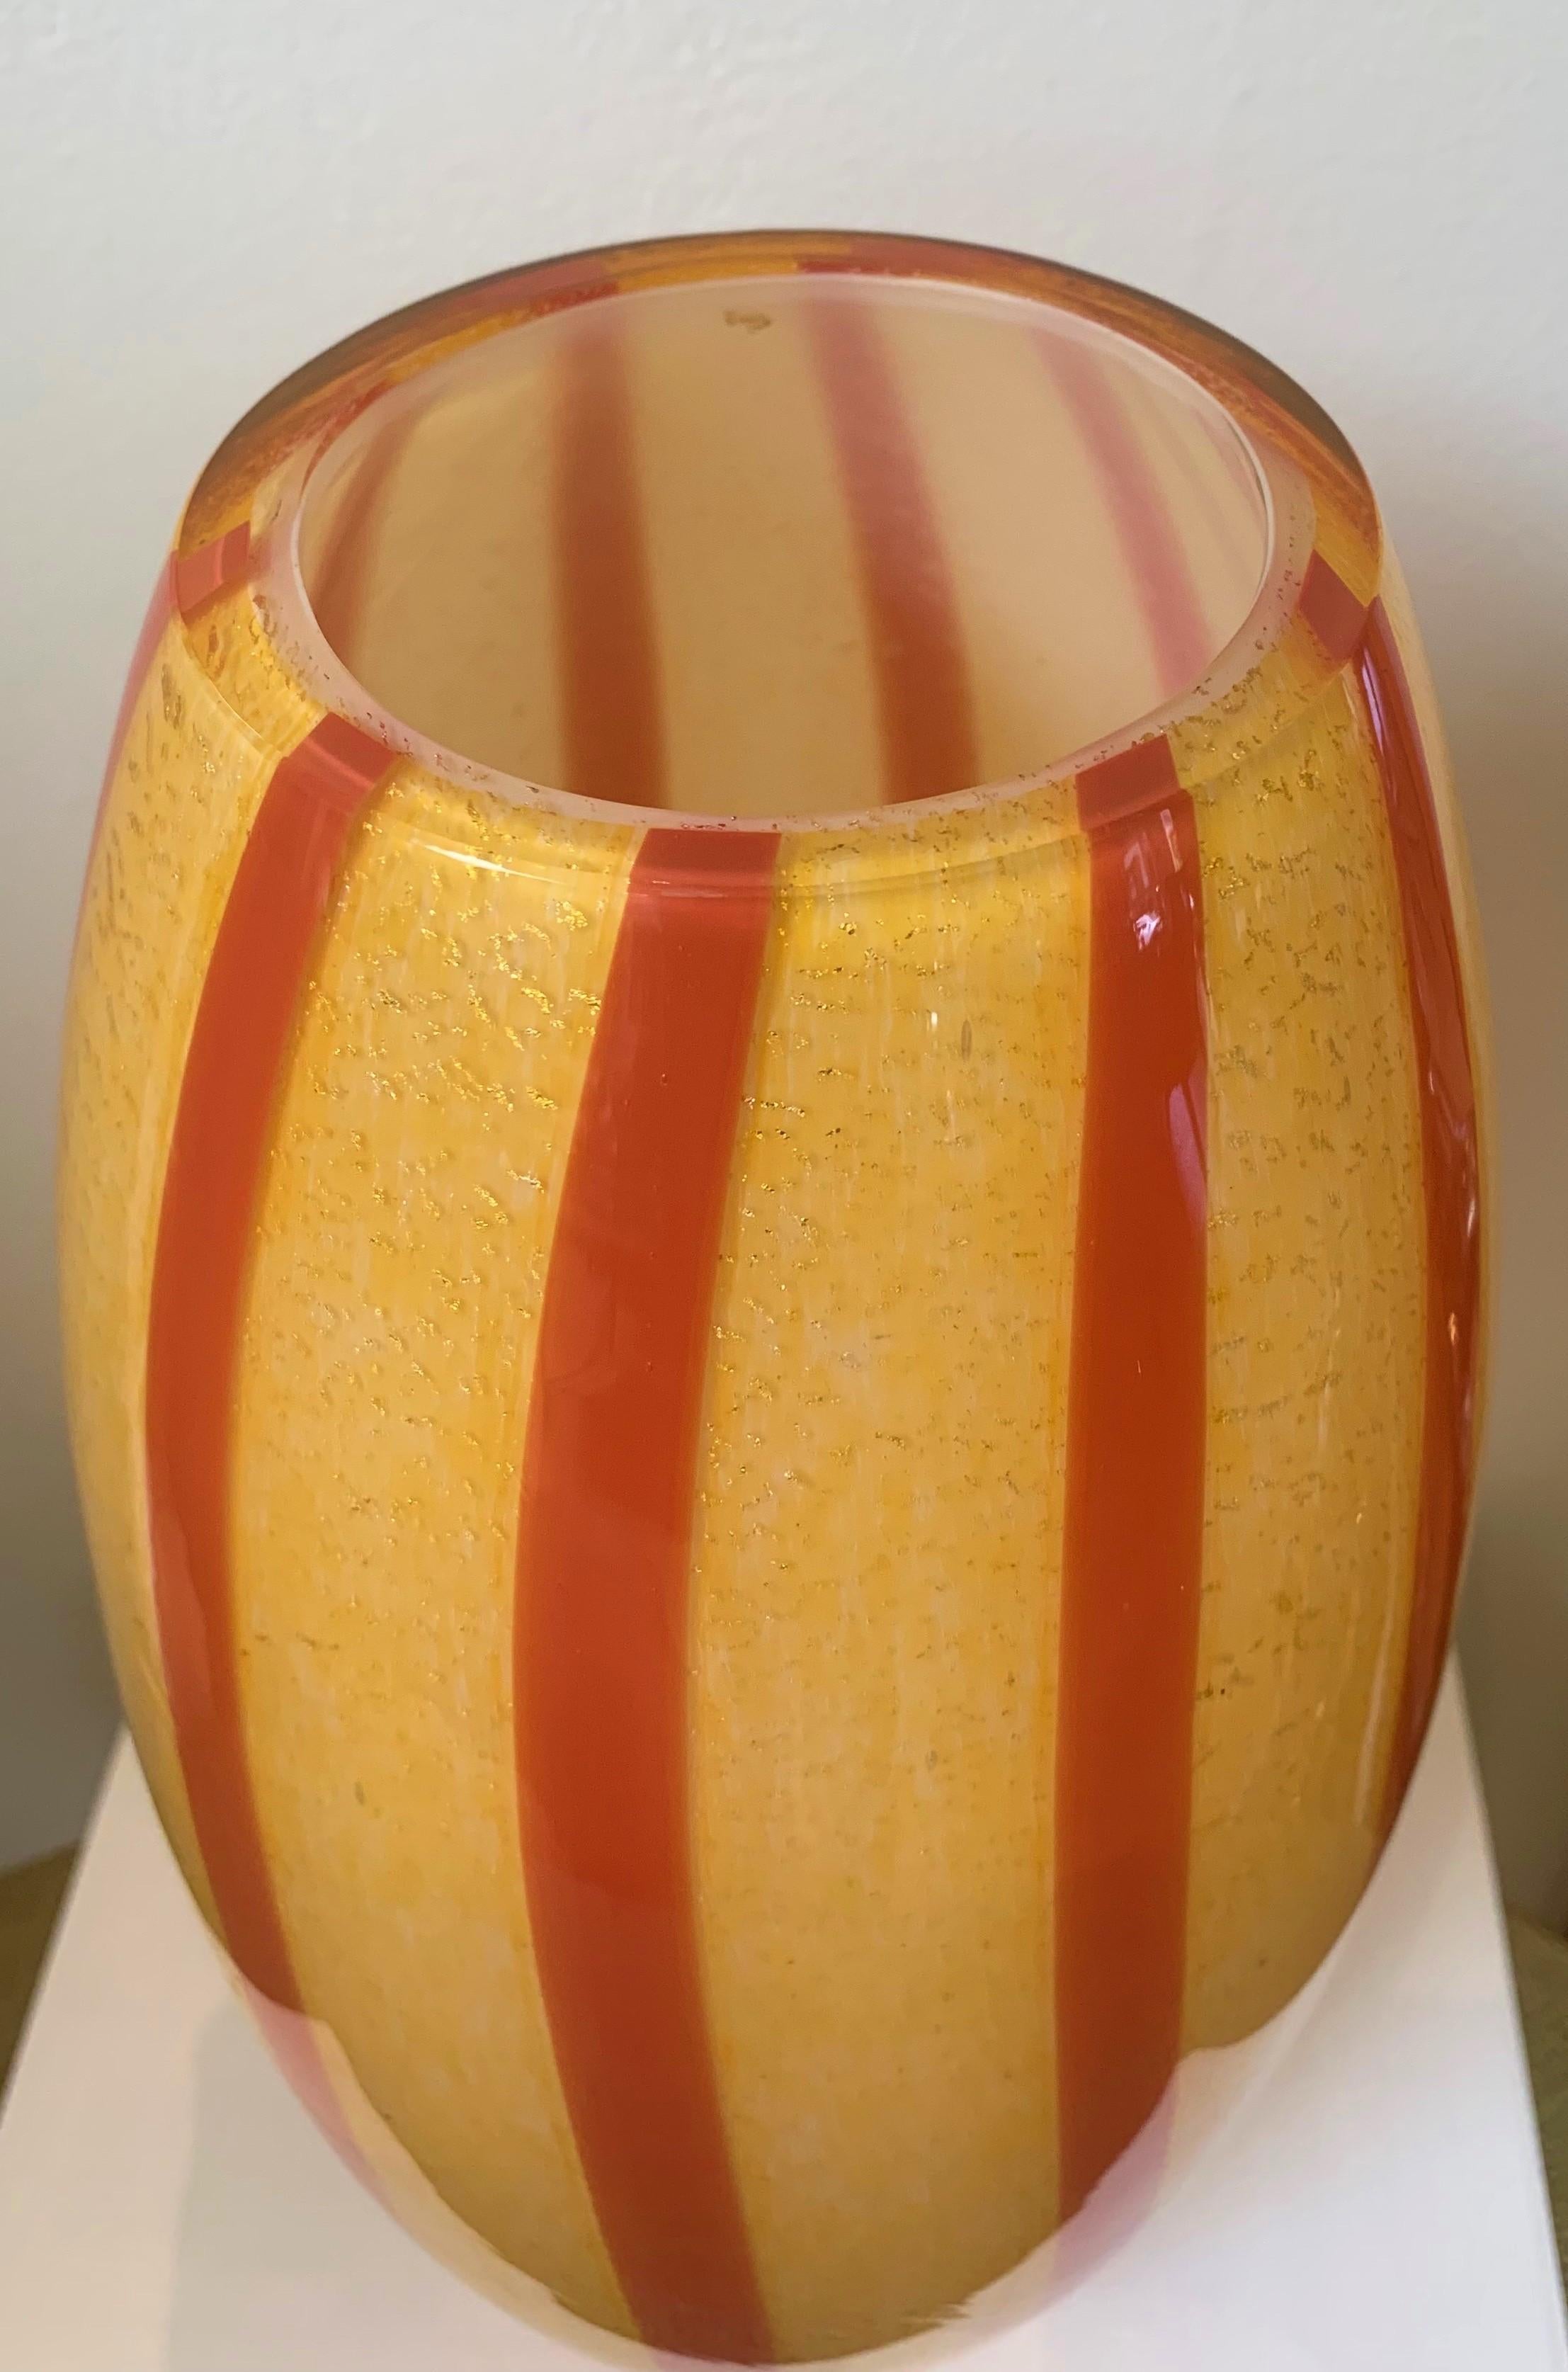 Barbini 1960s Art Glass Vase 
13.5